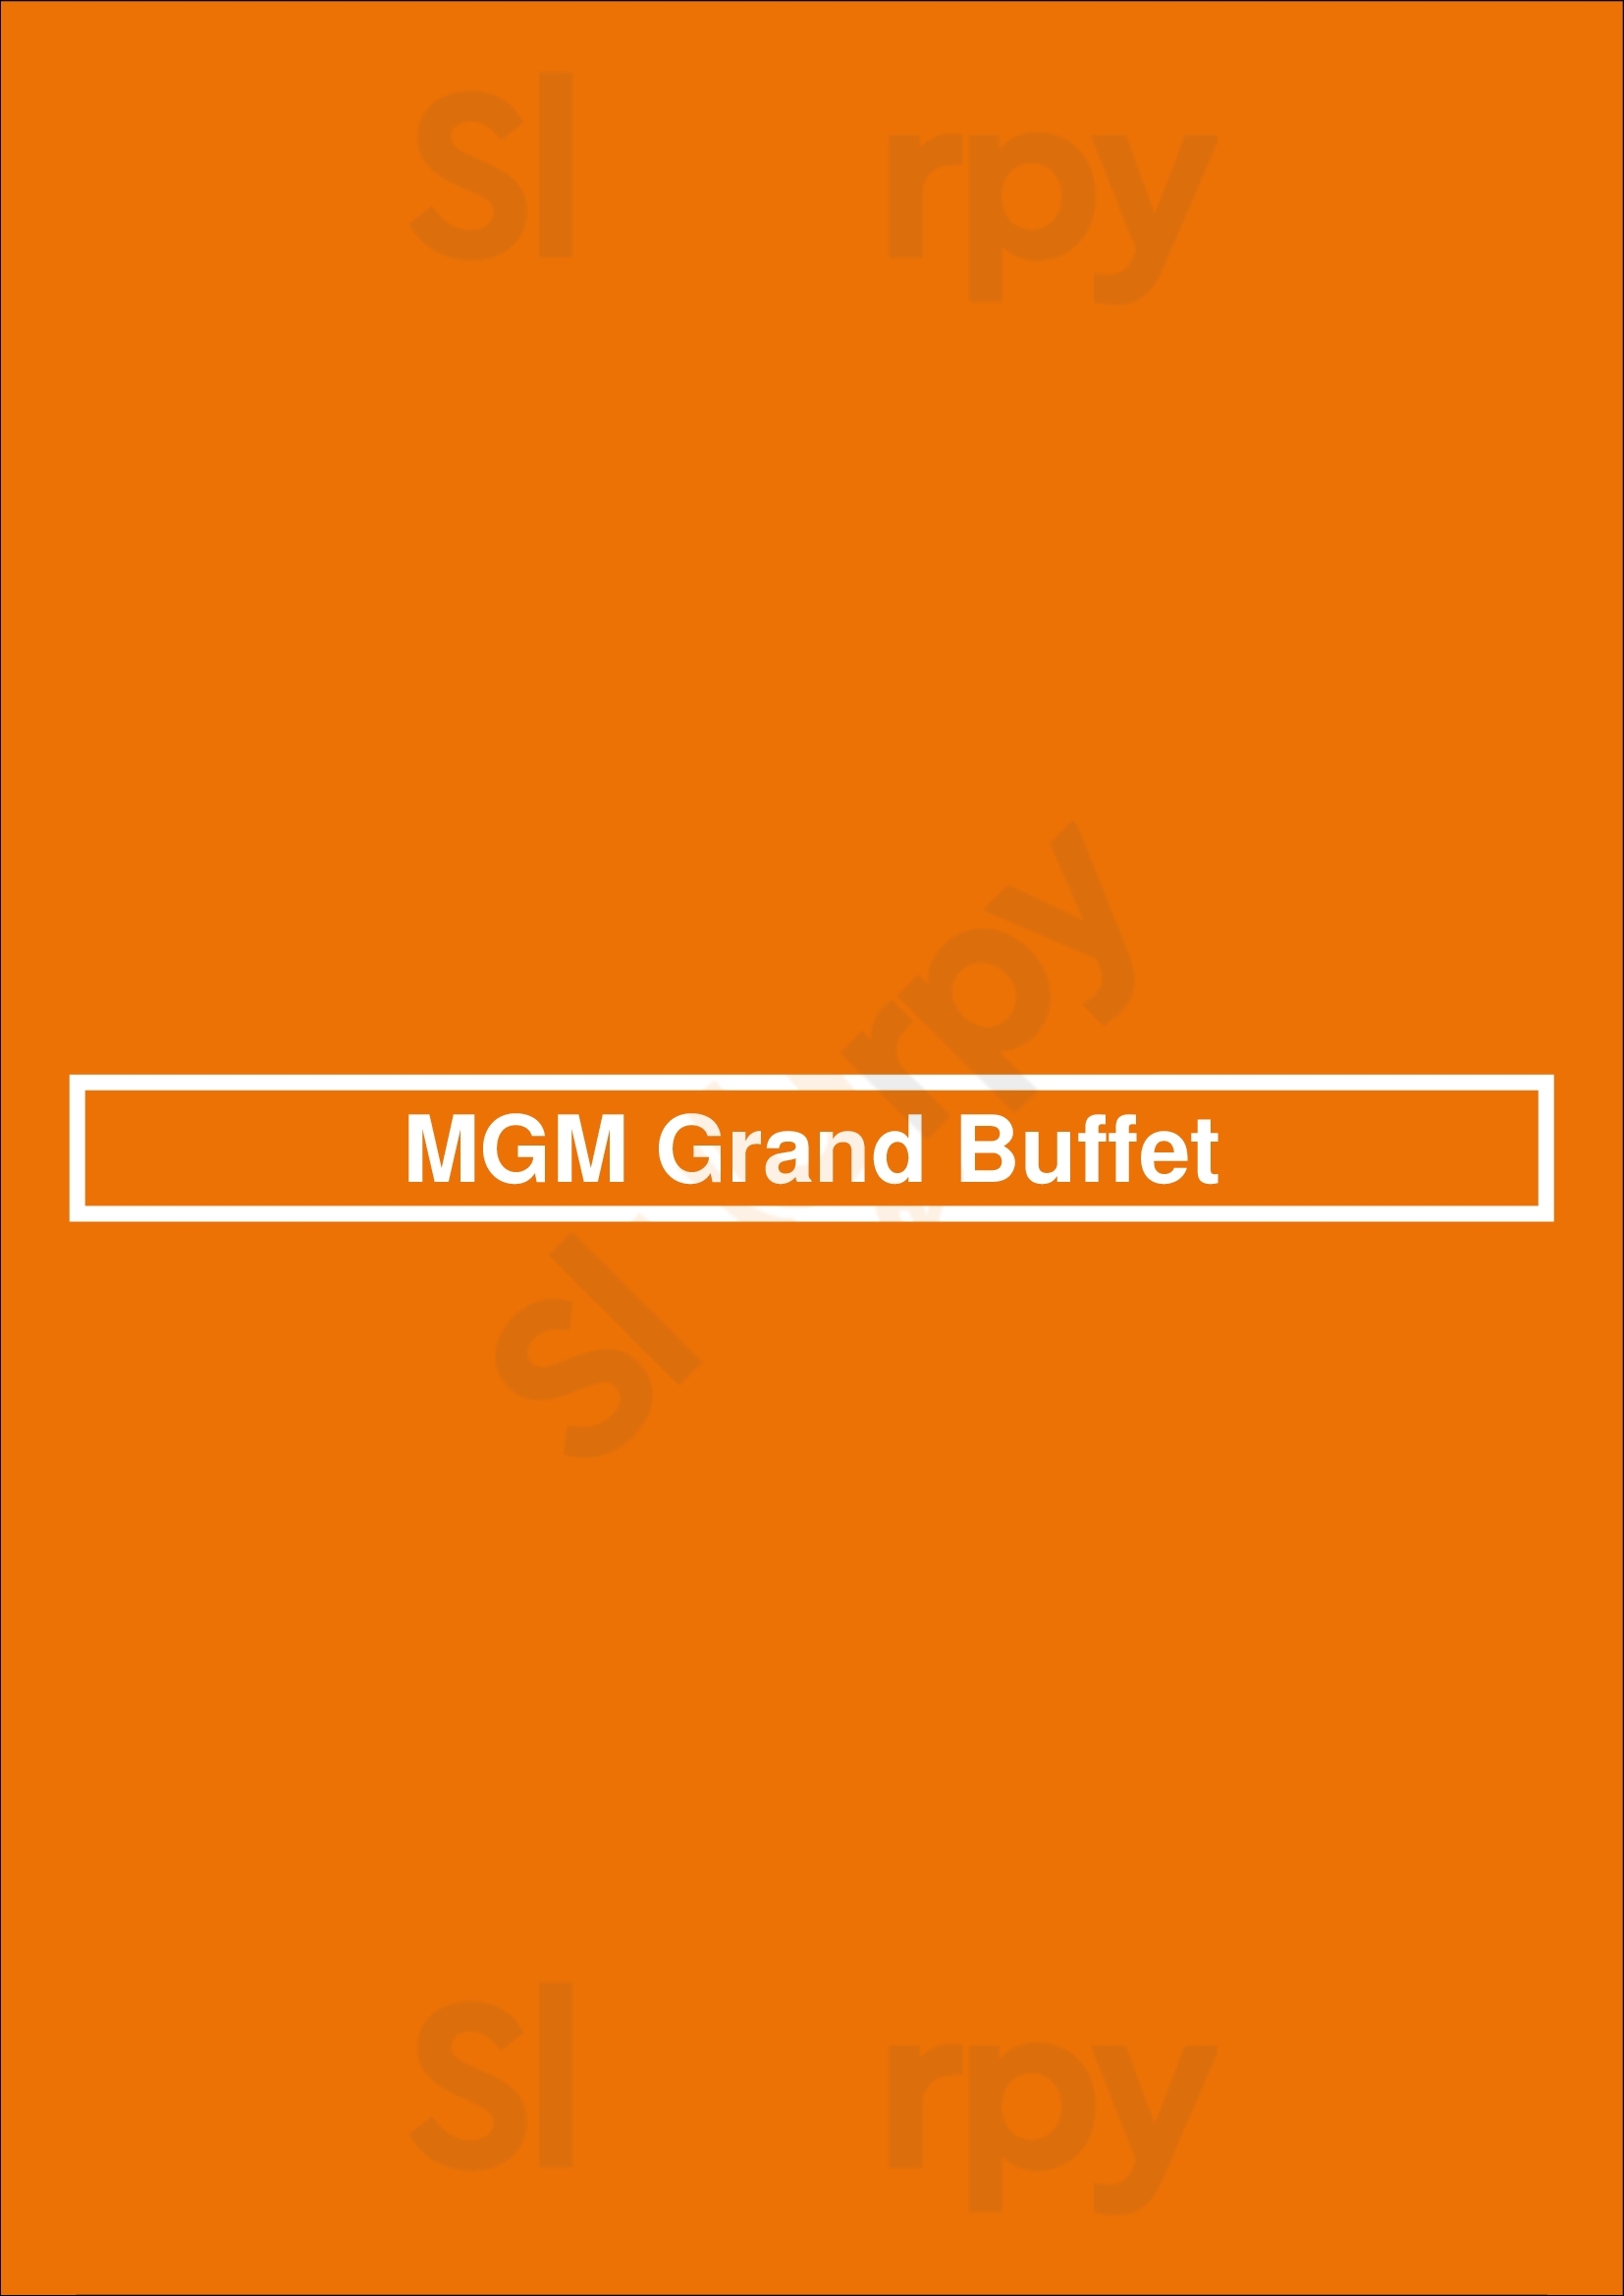 Mgm Grand Buffet Las Vegas Menu - 1